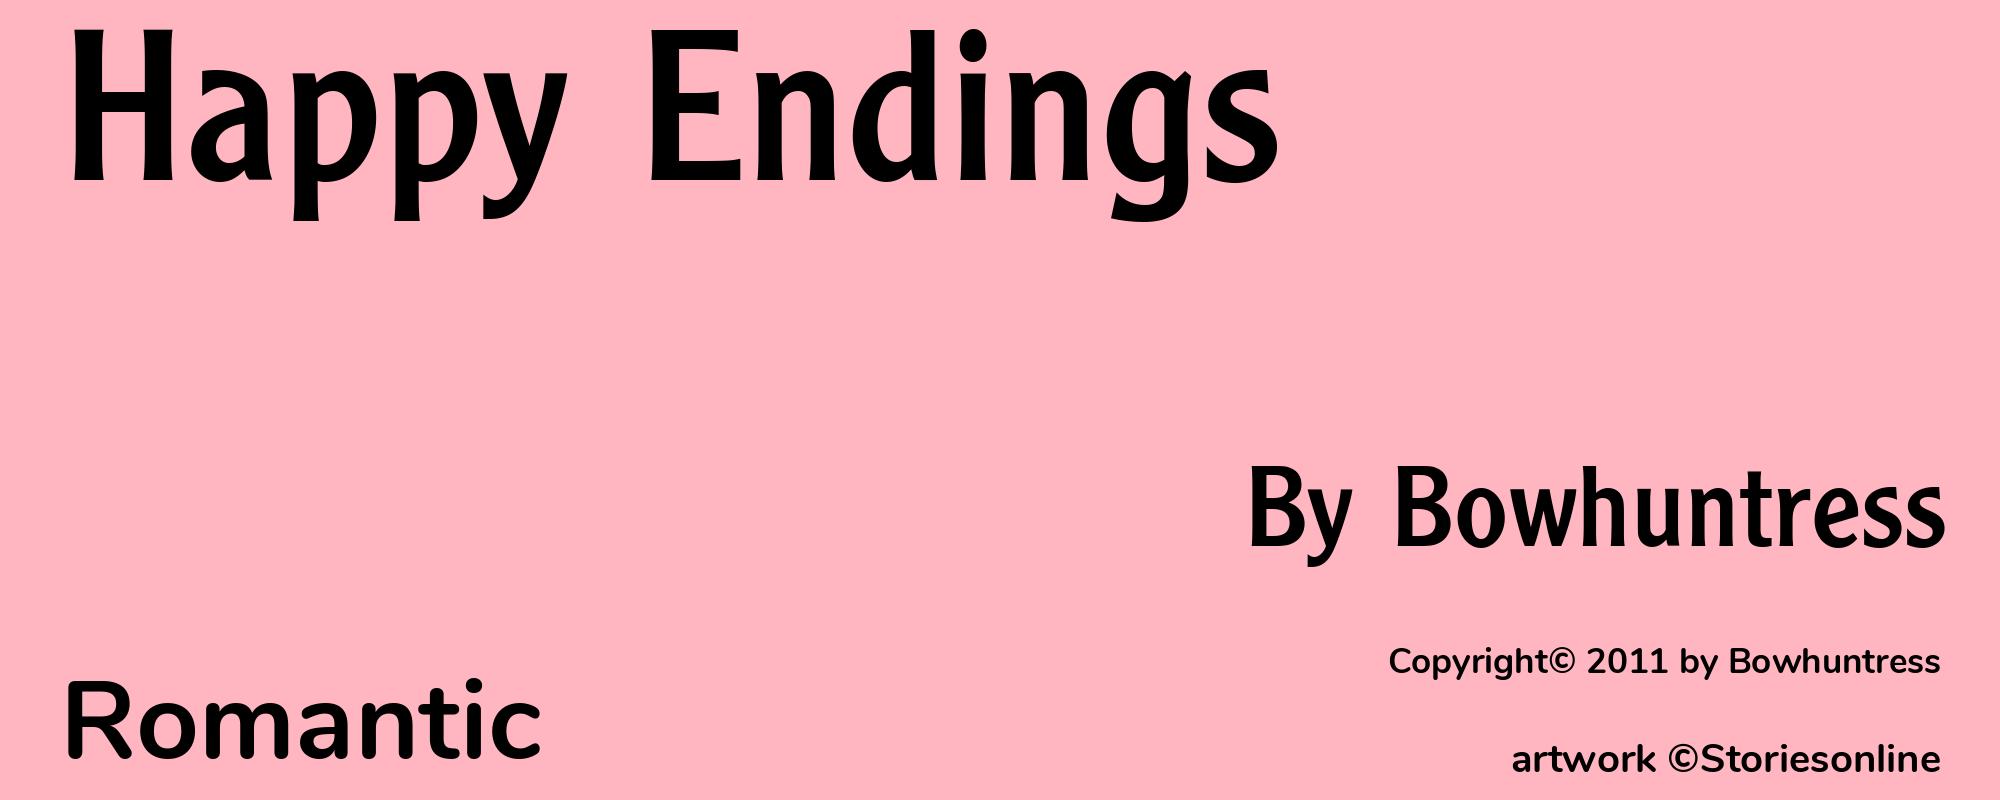 Happy Endings - Cover